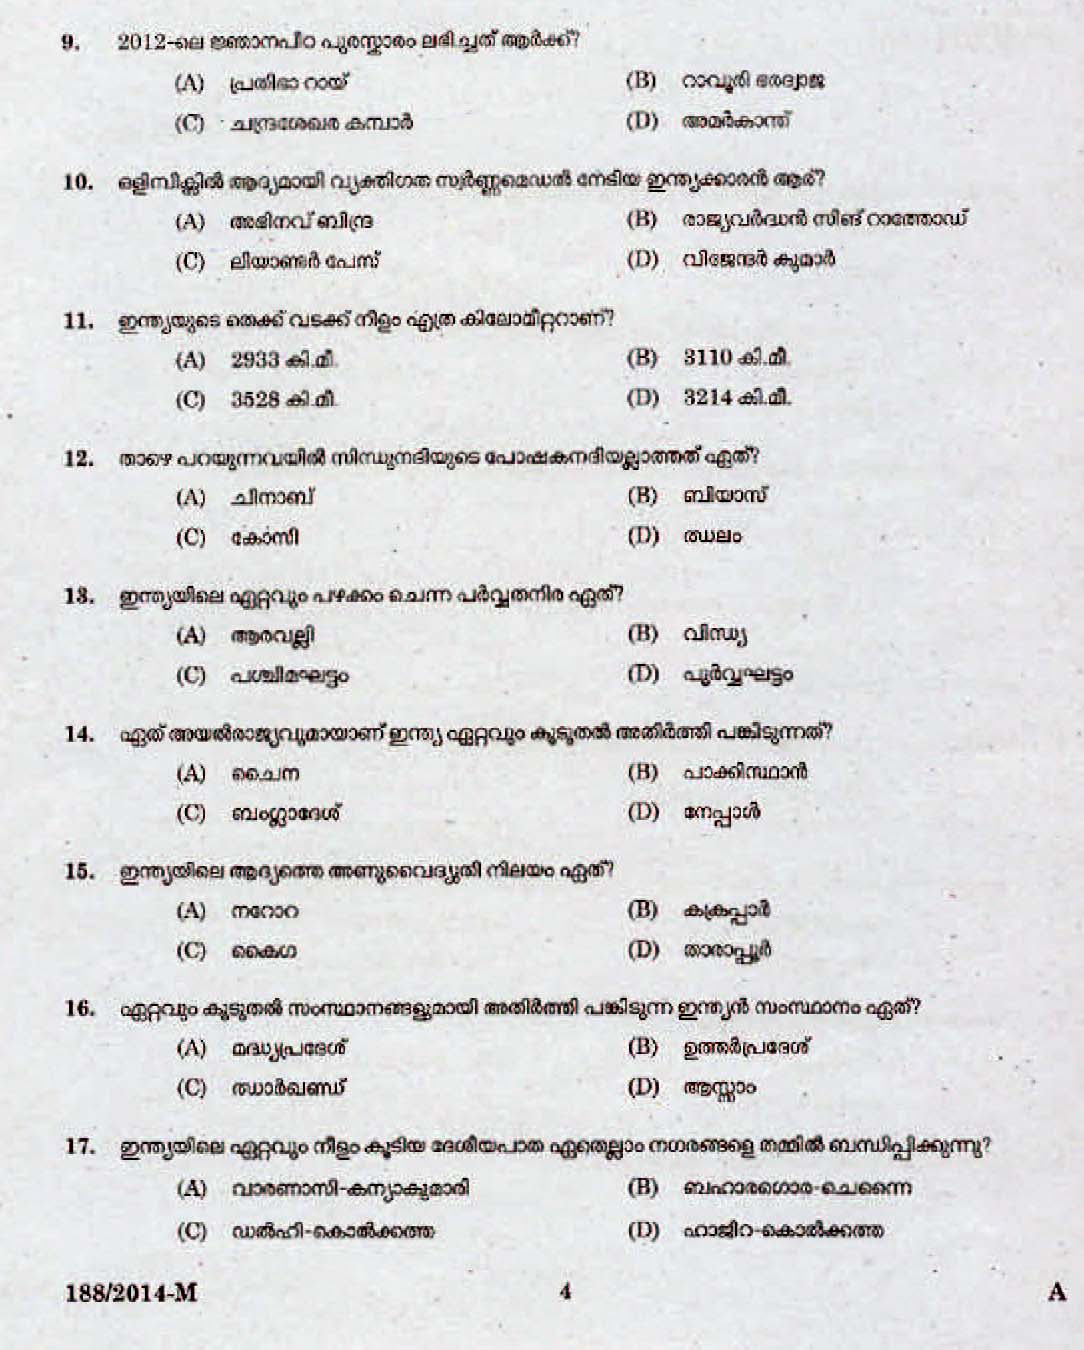 Kerala Last Grade Servants Exam 2014 Question Paper Code 1882014 M 2